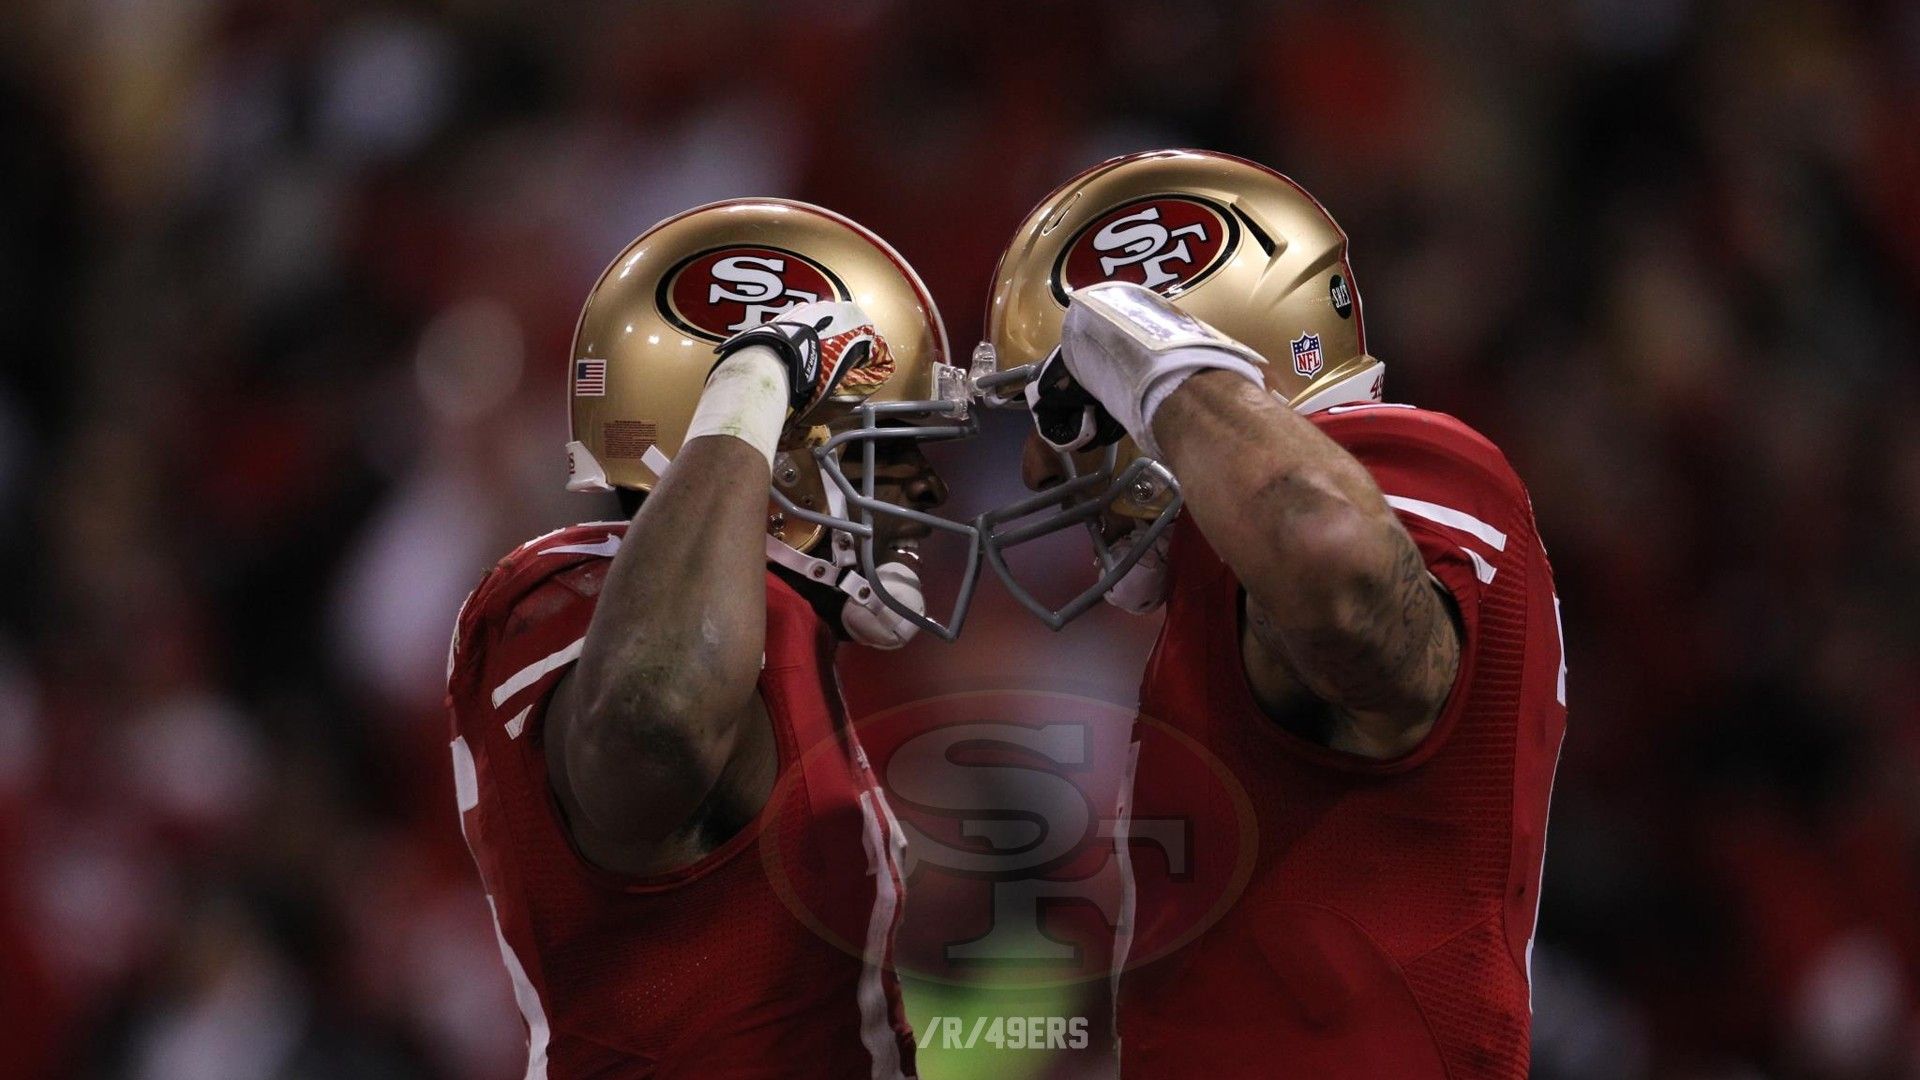 Free San Francisco 49ers NFL Live Wallpaper APK Download For Android   GetJar